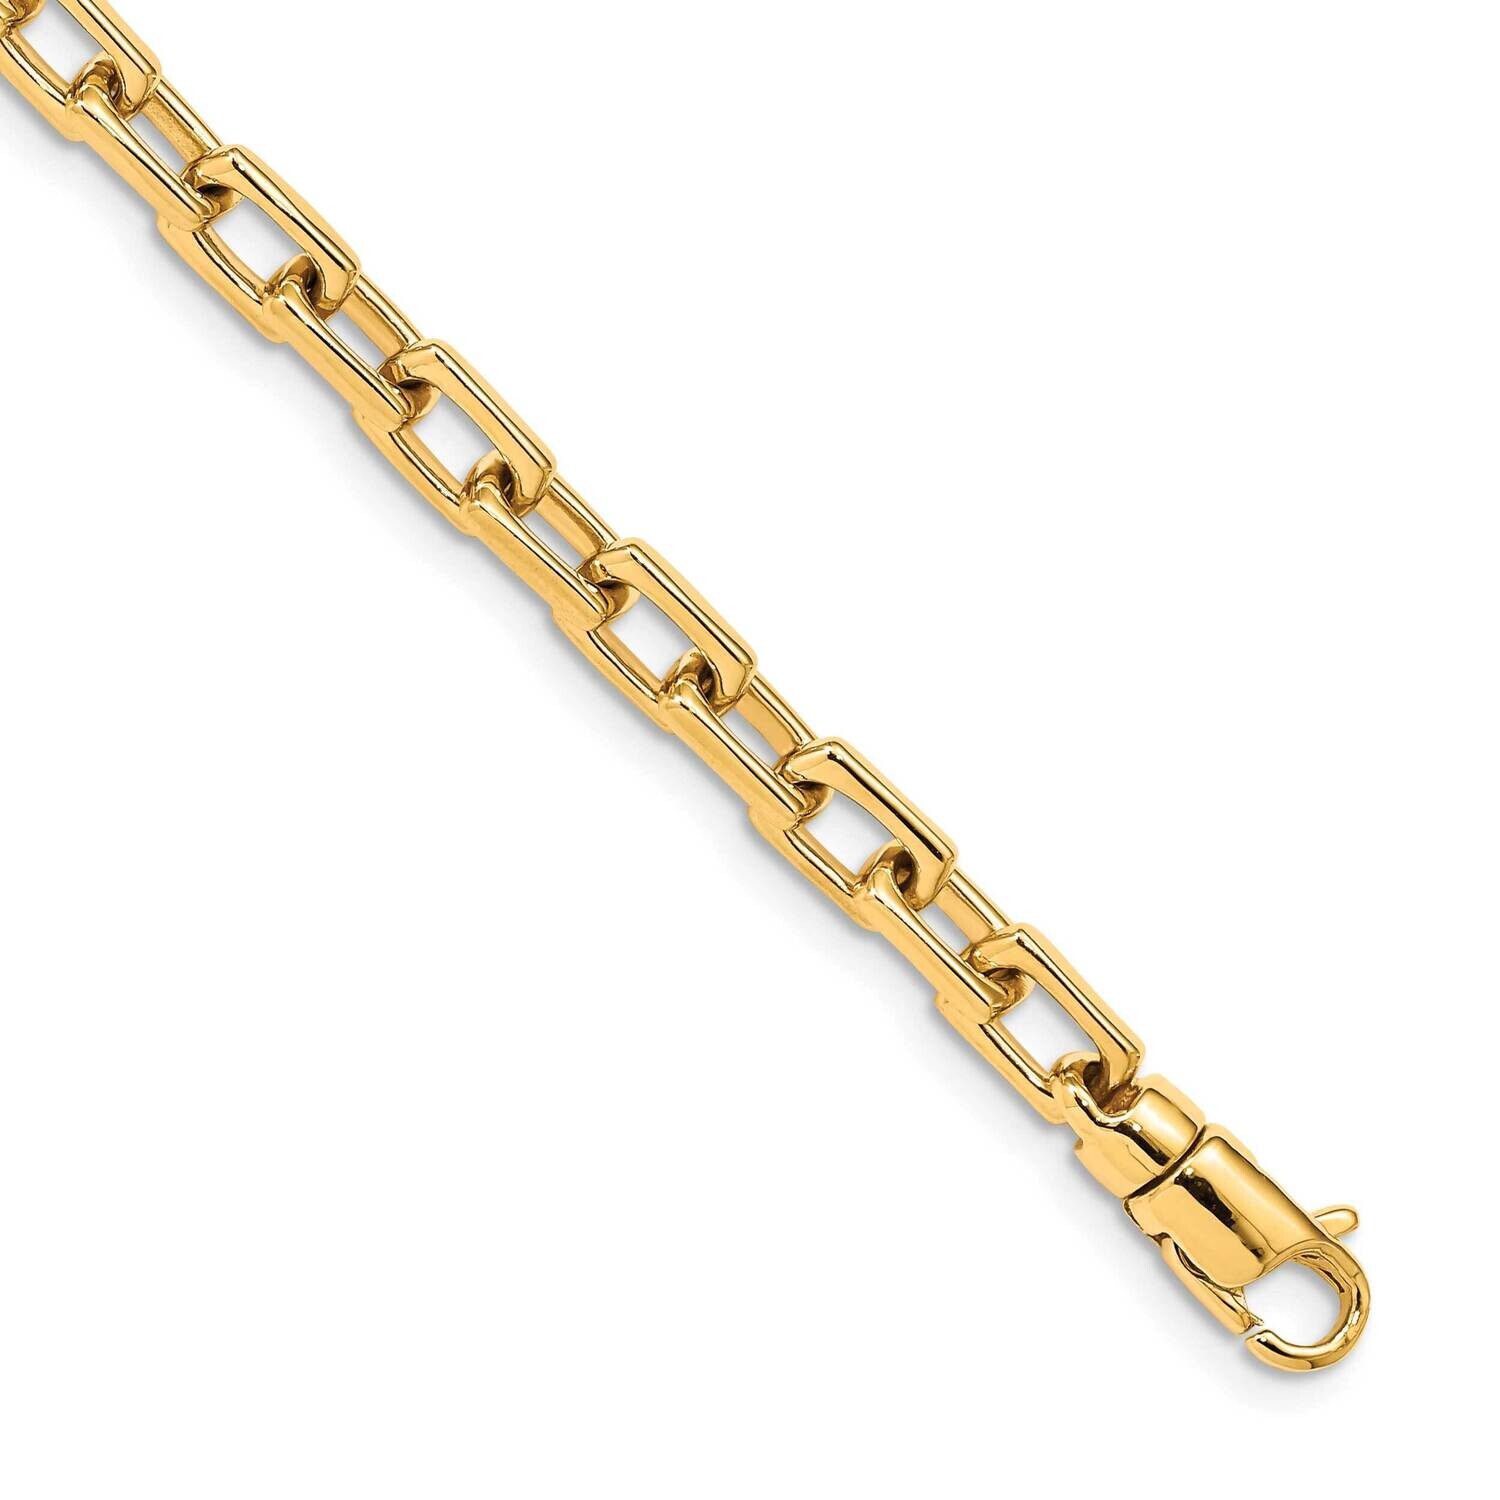 5mm Hand-Polished Fancy Link Bracelet 9 Inch 10k Gold 10LK436-9